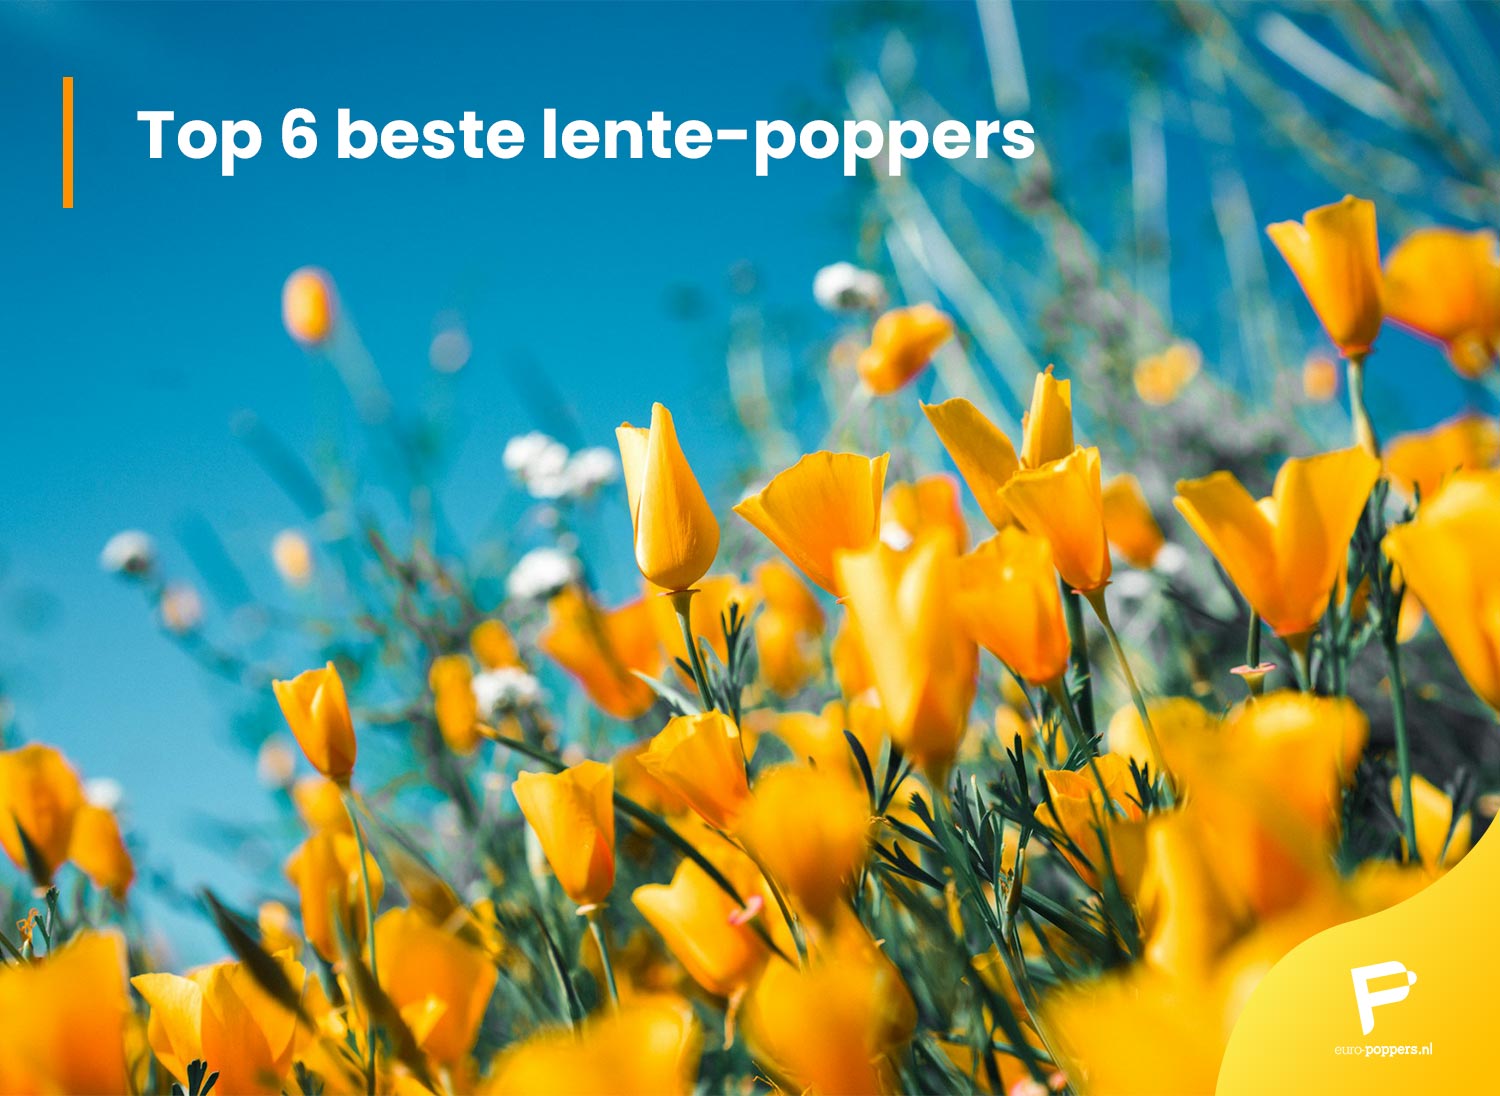 Je bekijkt nu Top 6 beste lente-poppers